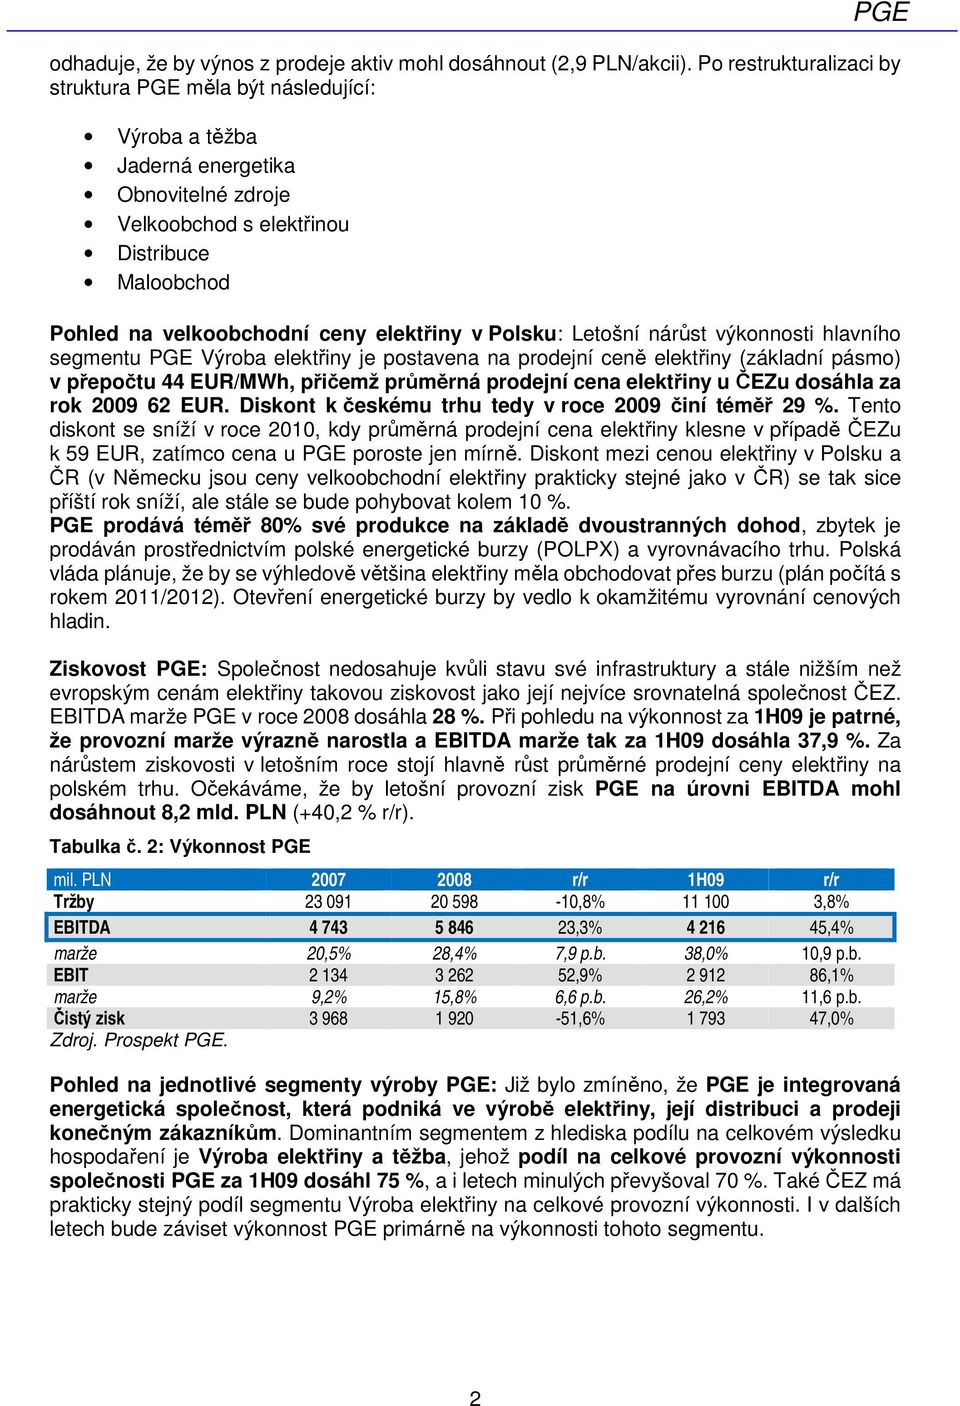 v Polsku: Letošní nárůst výkonnosti hlavního segmentu PGE Výroba elektřiny je postavena na prodejní ceně elektřiny (základní pásmo) v přepočtu 44 EUR/MWh, přičemž průměrná prodejní cena elektřiny u